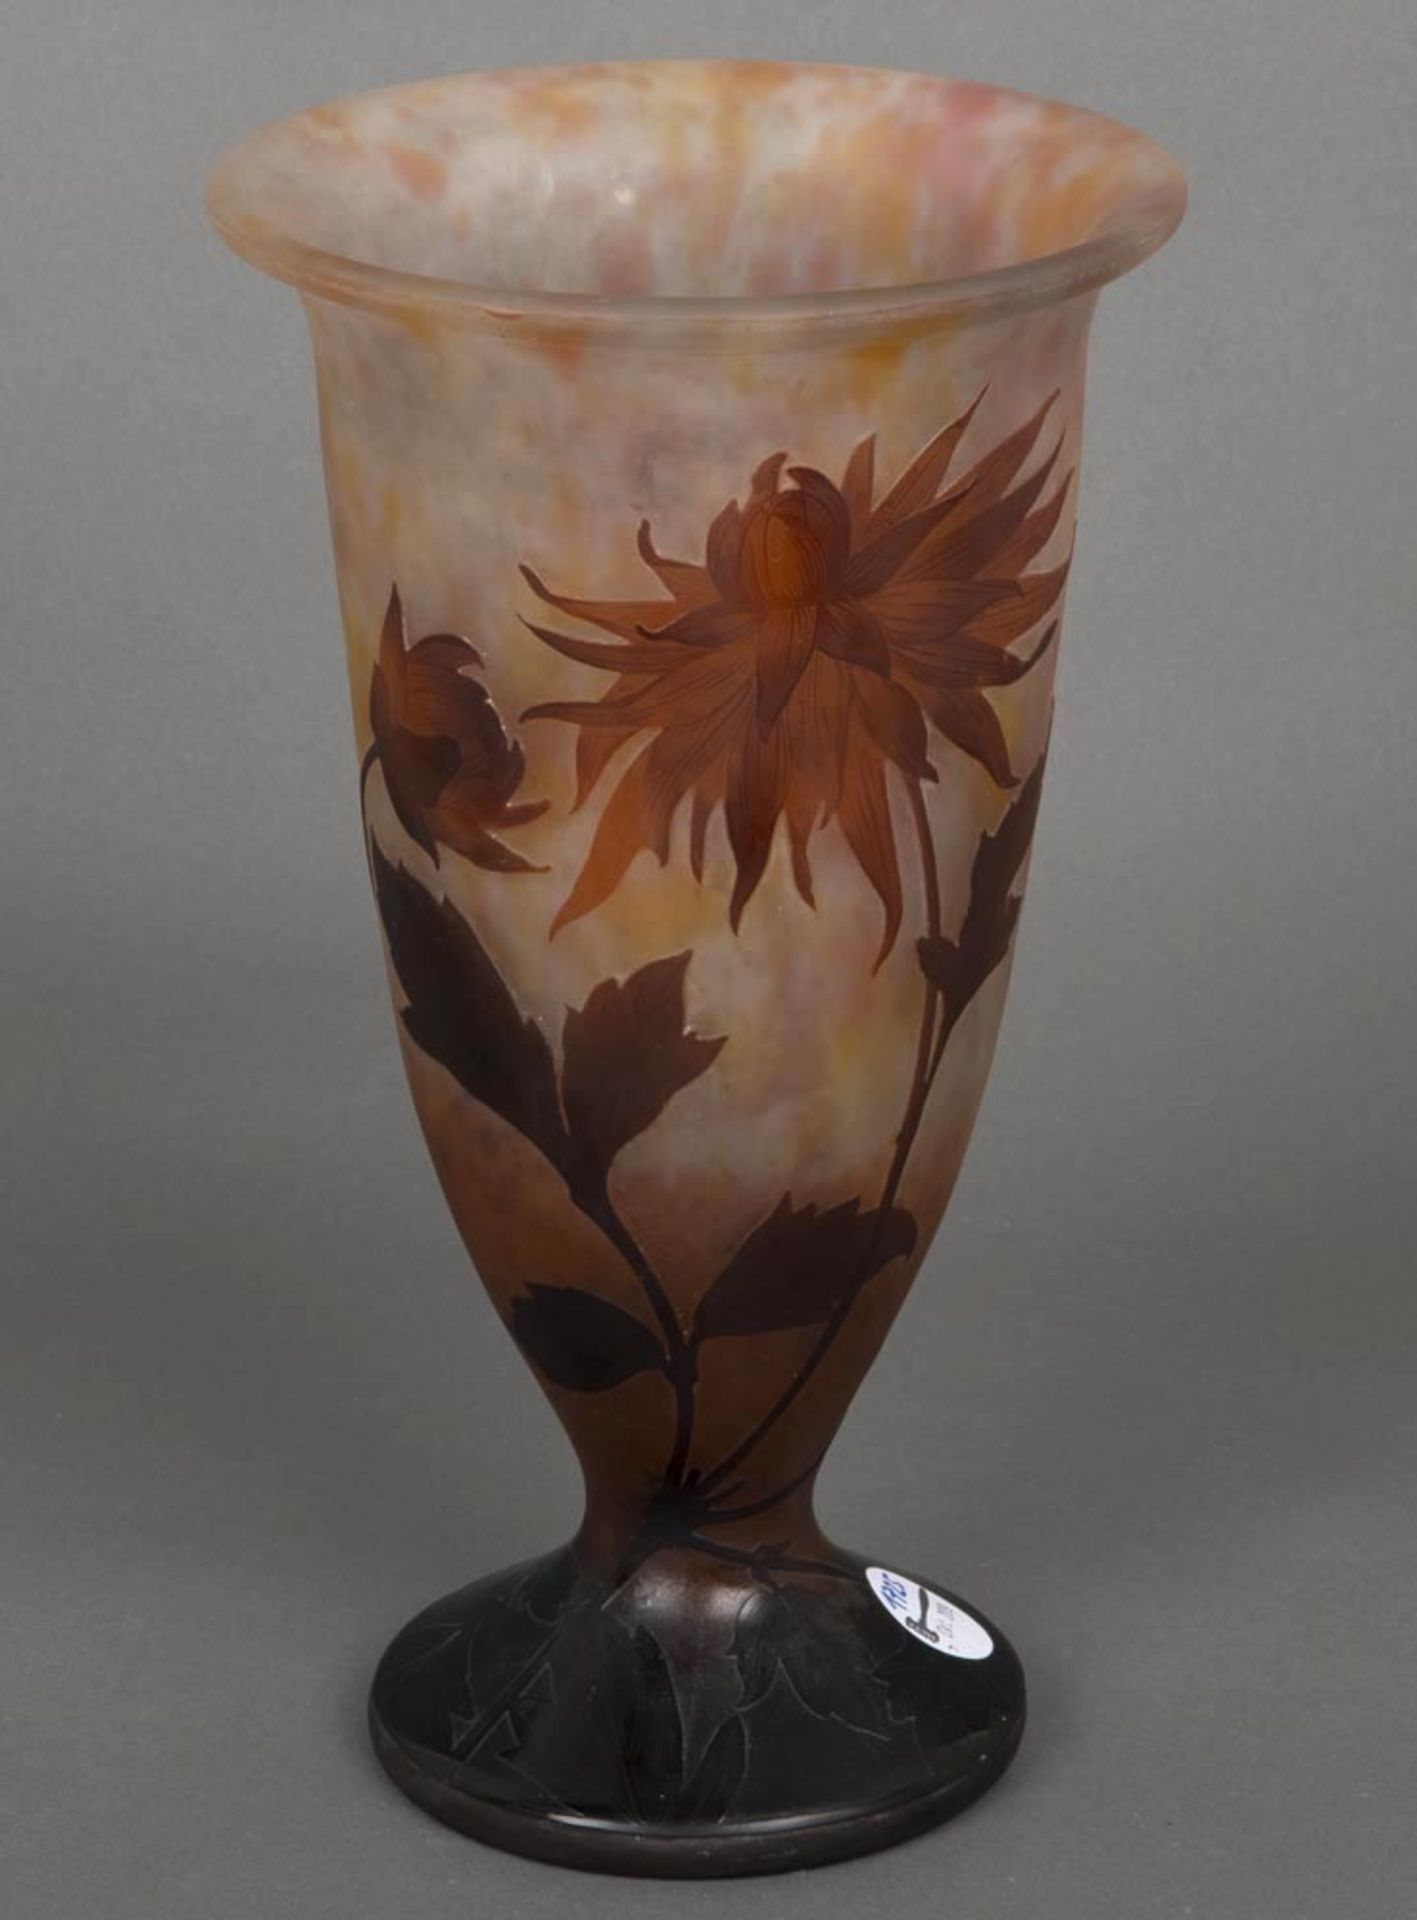 Jugendstil-Vase. Frankreich, wohl Émile Gallé um 1900. Farbloses Glas, farbig überfangen, floral